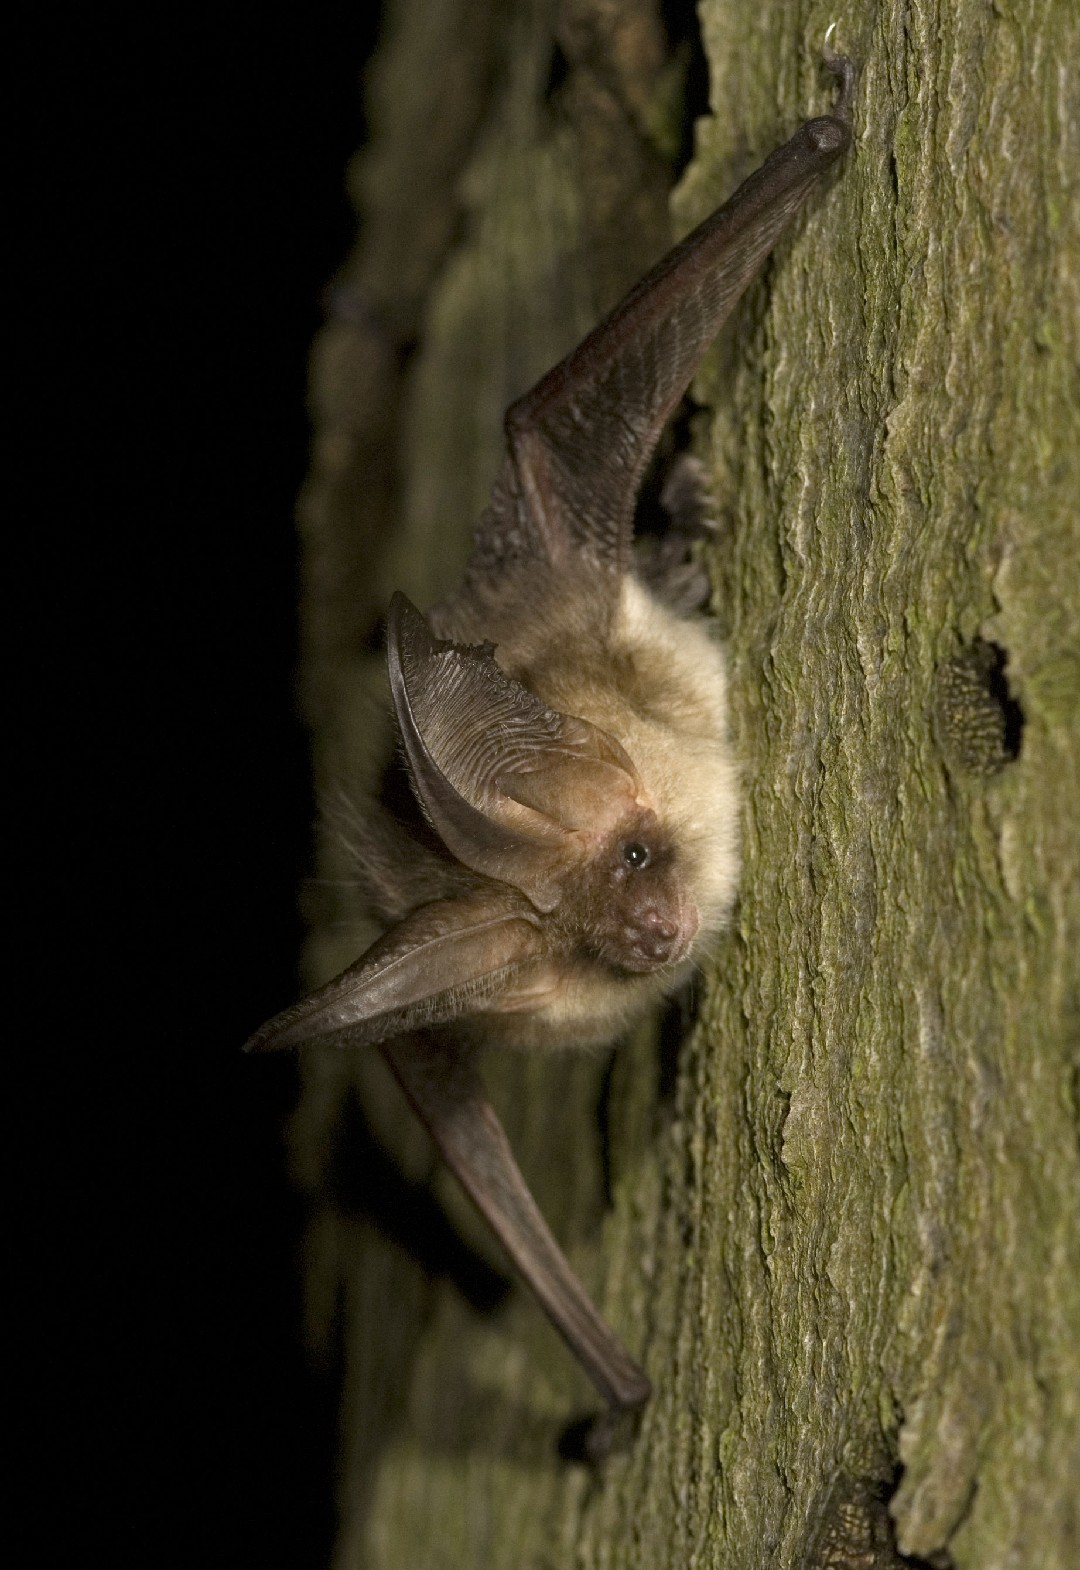 Long-eared bats (Plecotus)